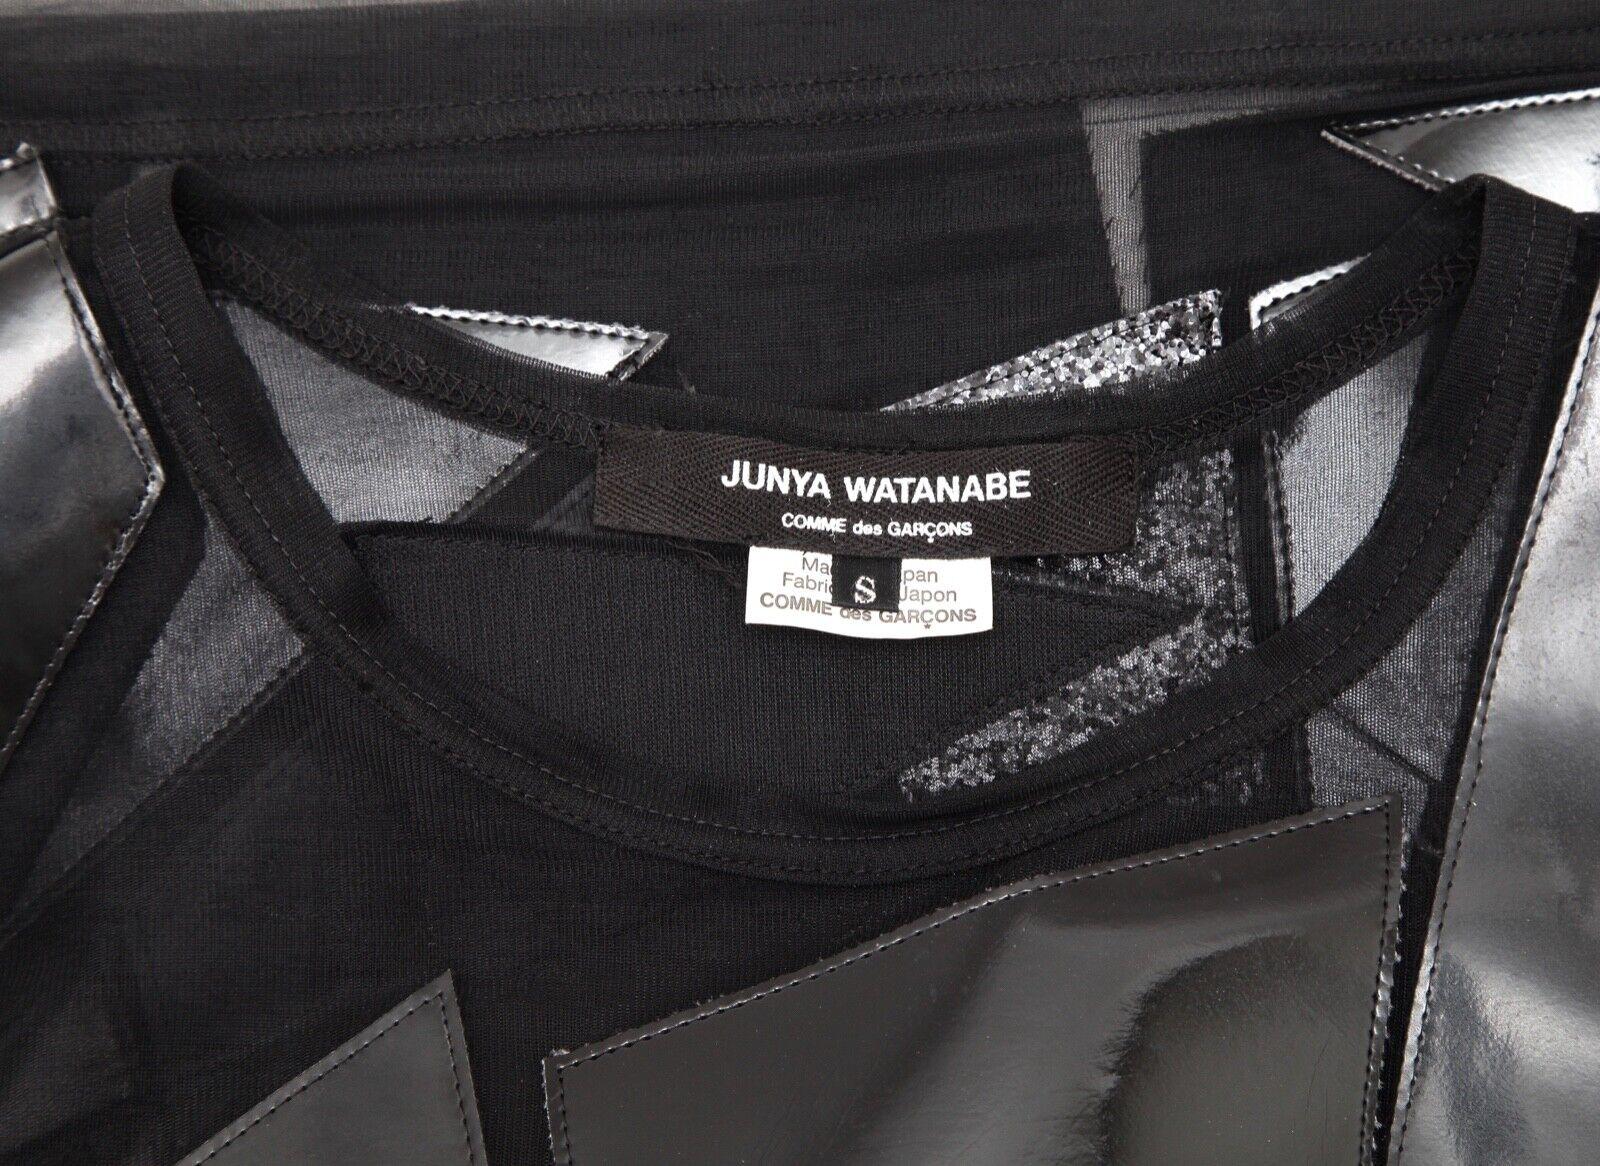 JUNYA WATANABE COMME DES GARCONS Black Top Blouse Shirt Cap Sleeve Sz S For Sale 3